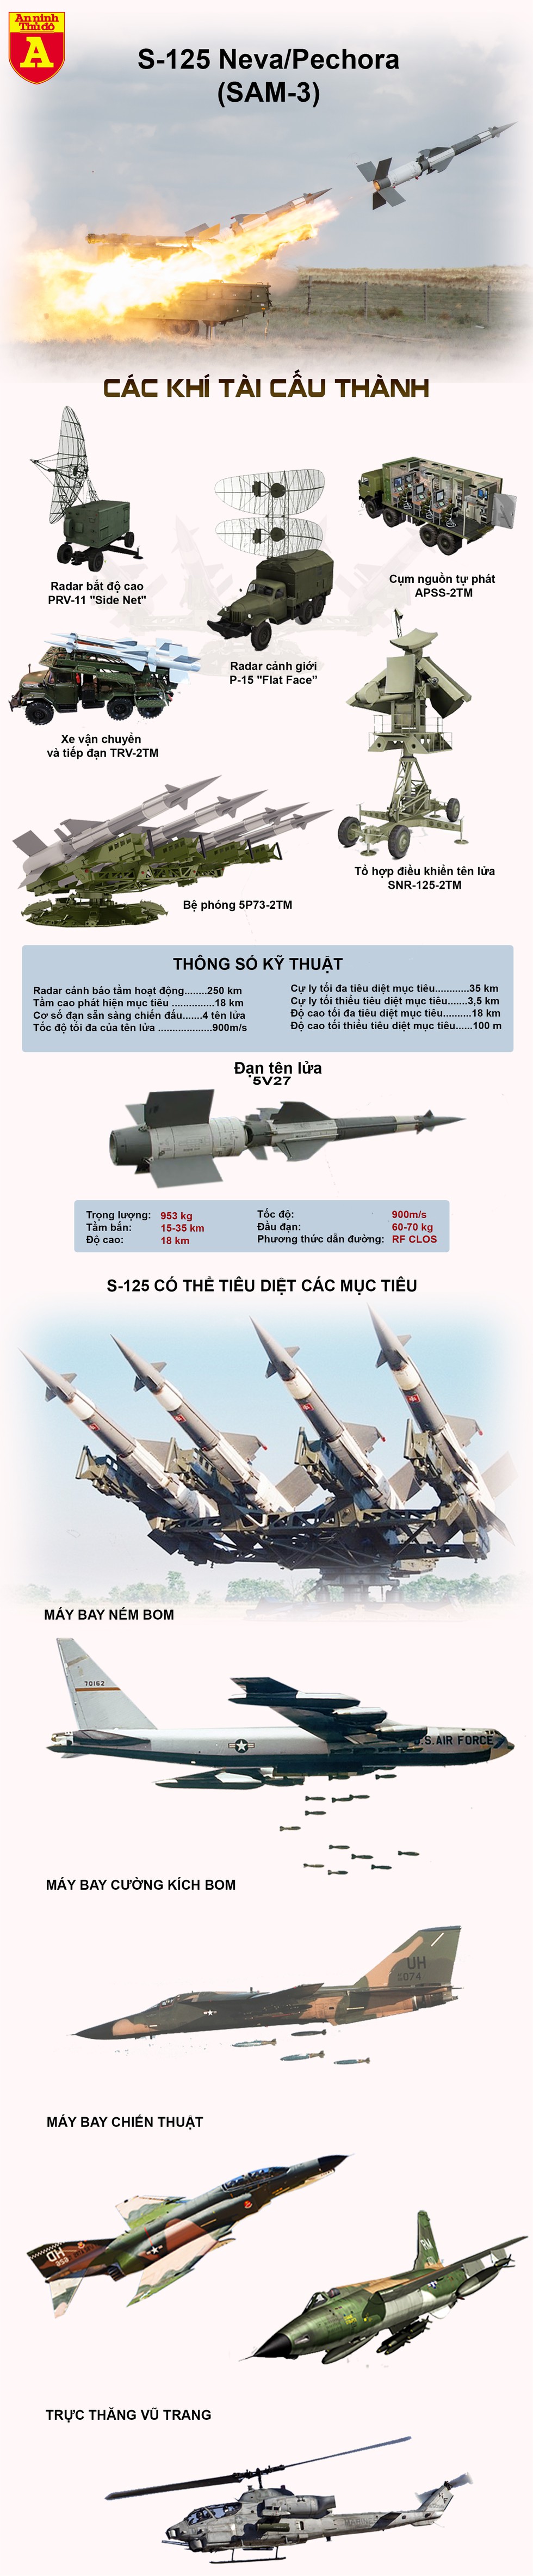 [Infographics] Thổ Nhĩ Kỳ mua hệ thống phòng không Ukraine để làm gì? - Ảnh 1